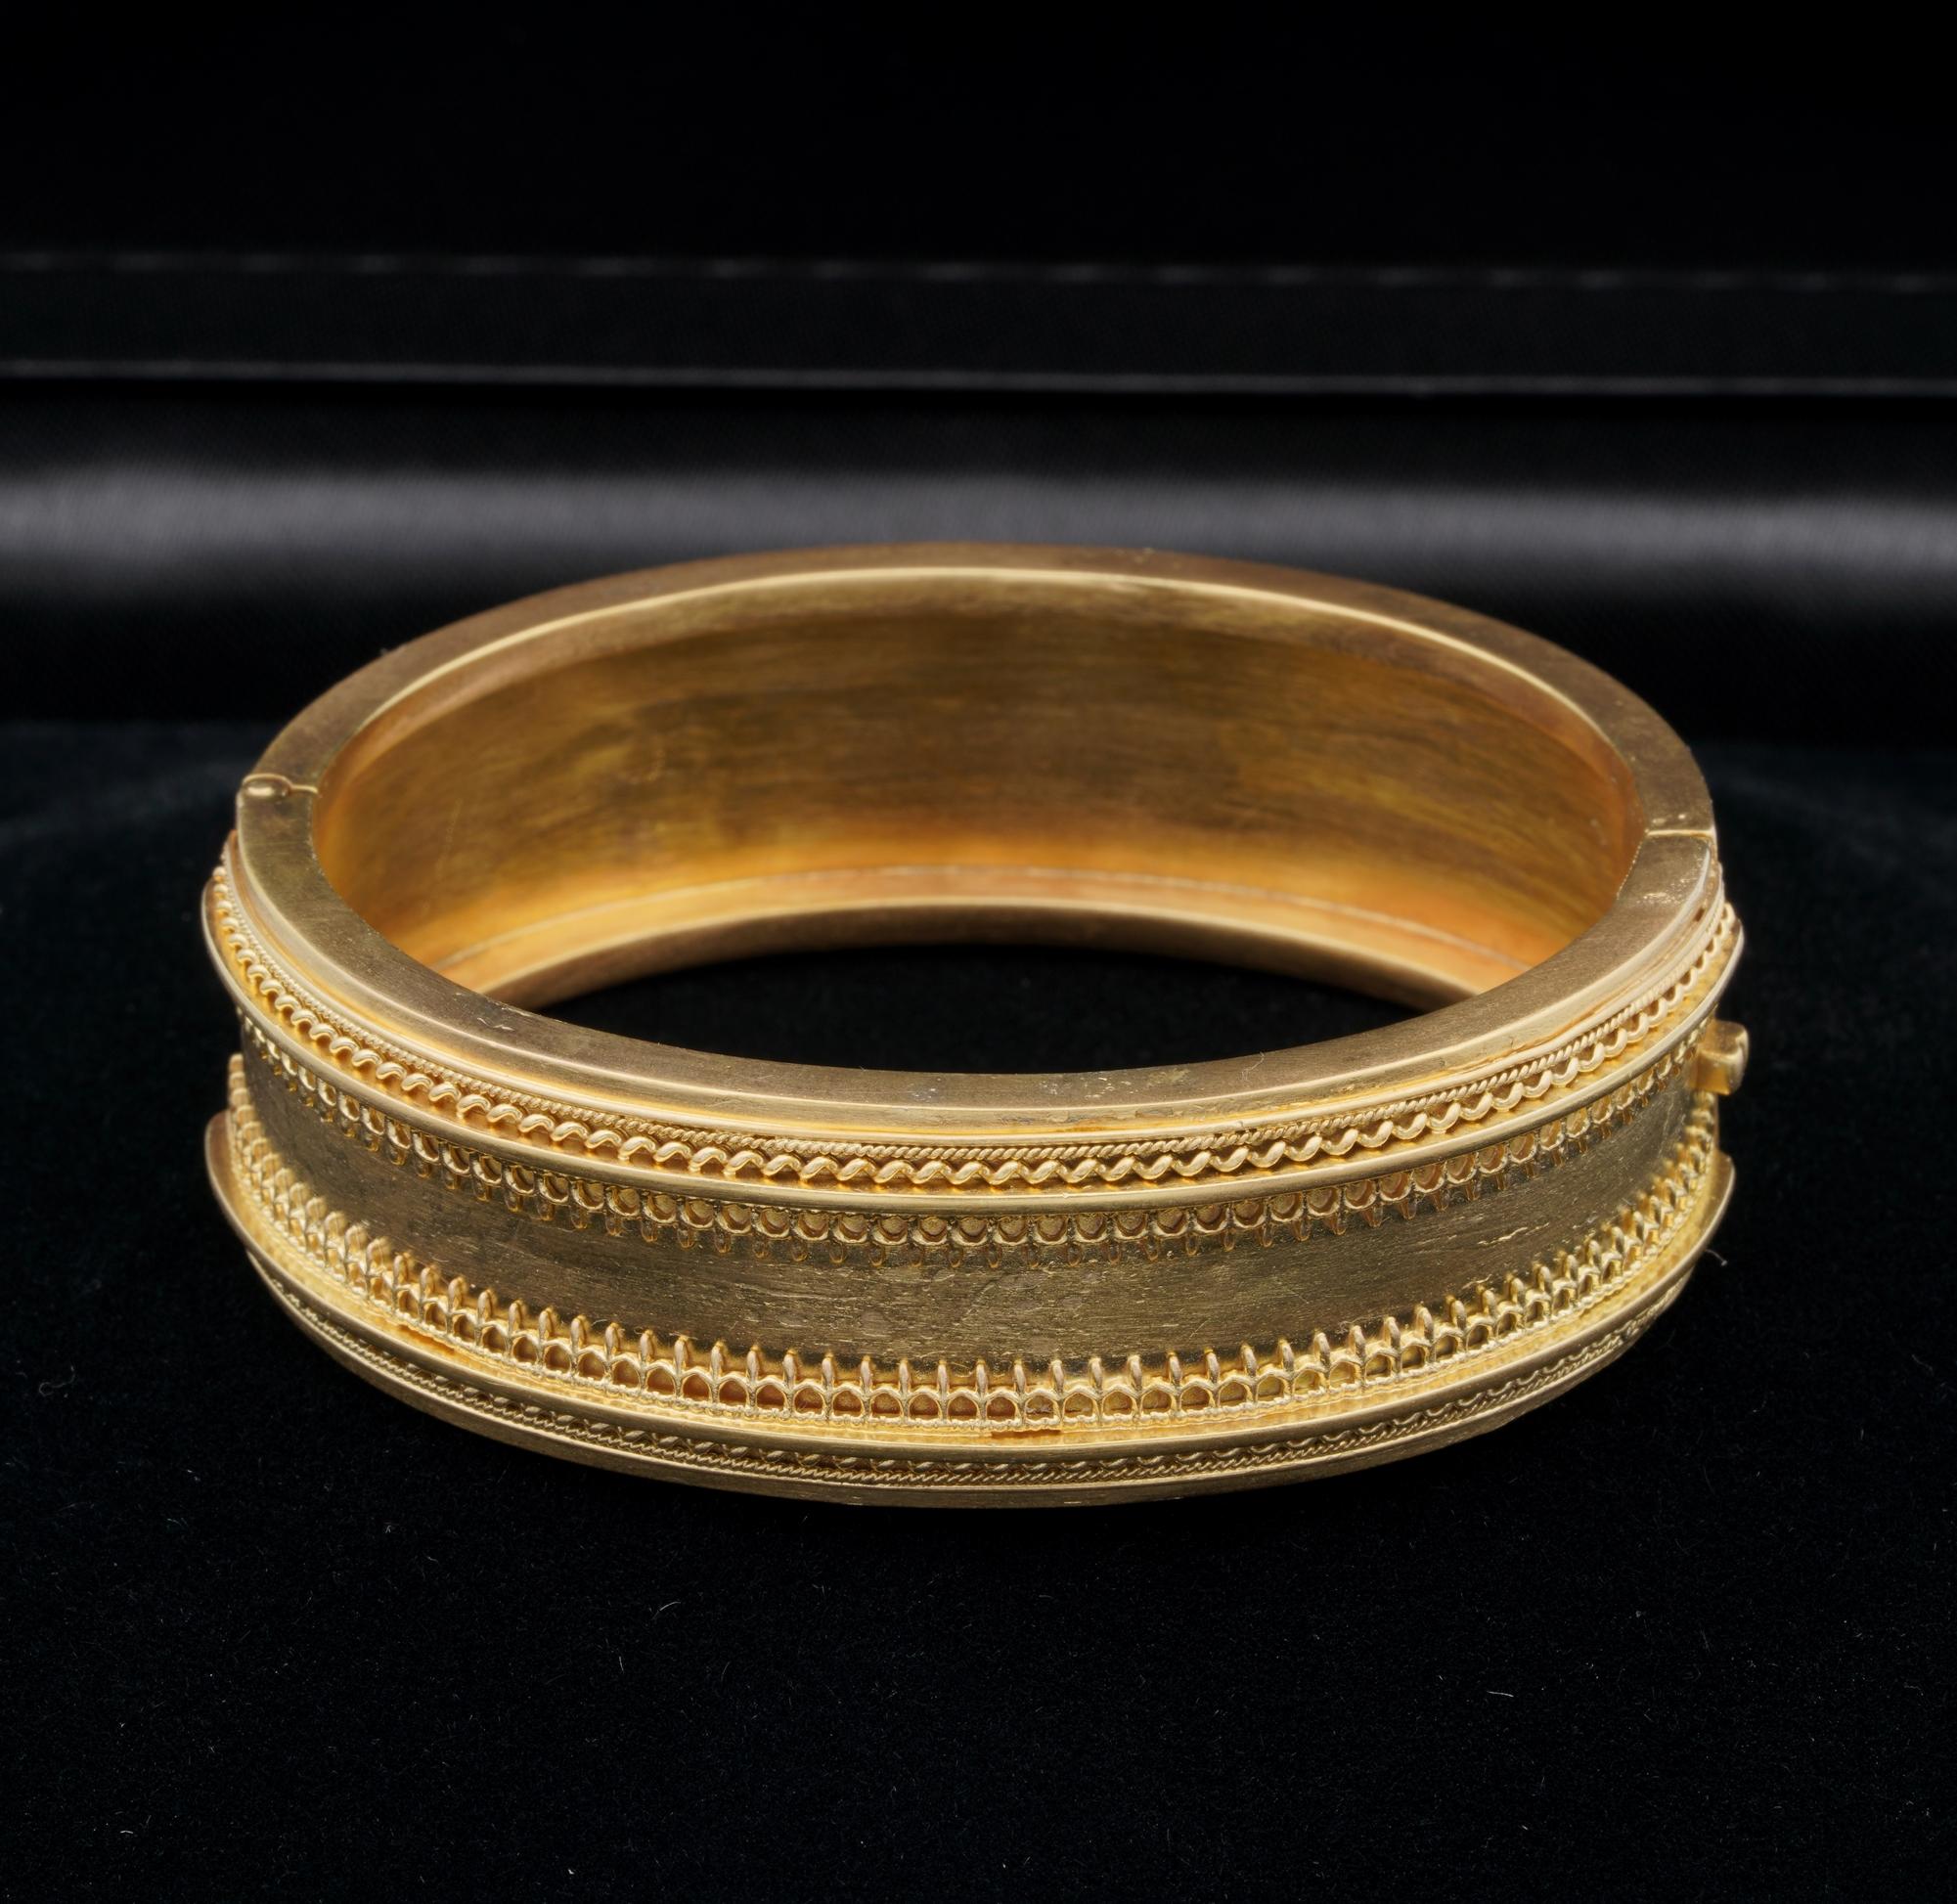 Schöne viktorianischen Zeit große gestempelt 15 Karat Gold englischen Ursprungs
Elegantes etruskisches Revival mit gedrehten Seilen und Fleur-de-Lys-Motiven, die den etruskischen Stil widerspiegeln
1850/1870 ca - 18 mm. in der Breite,